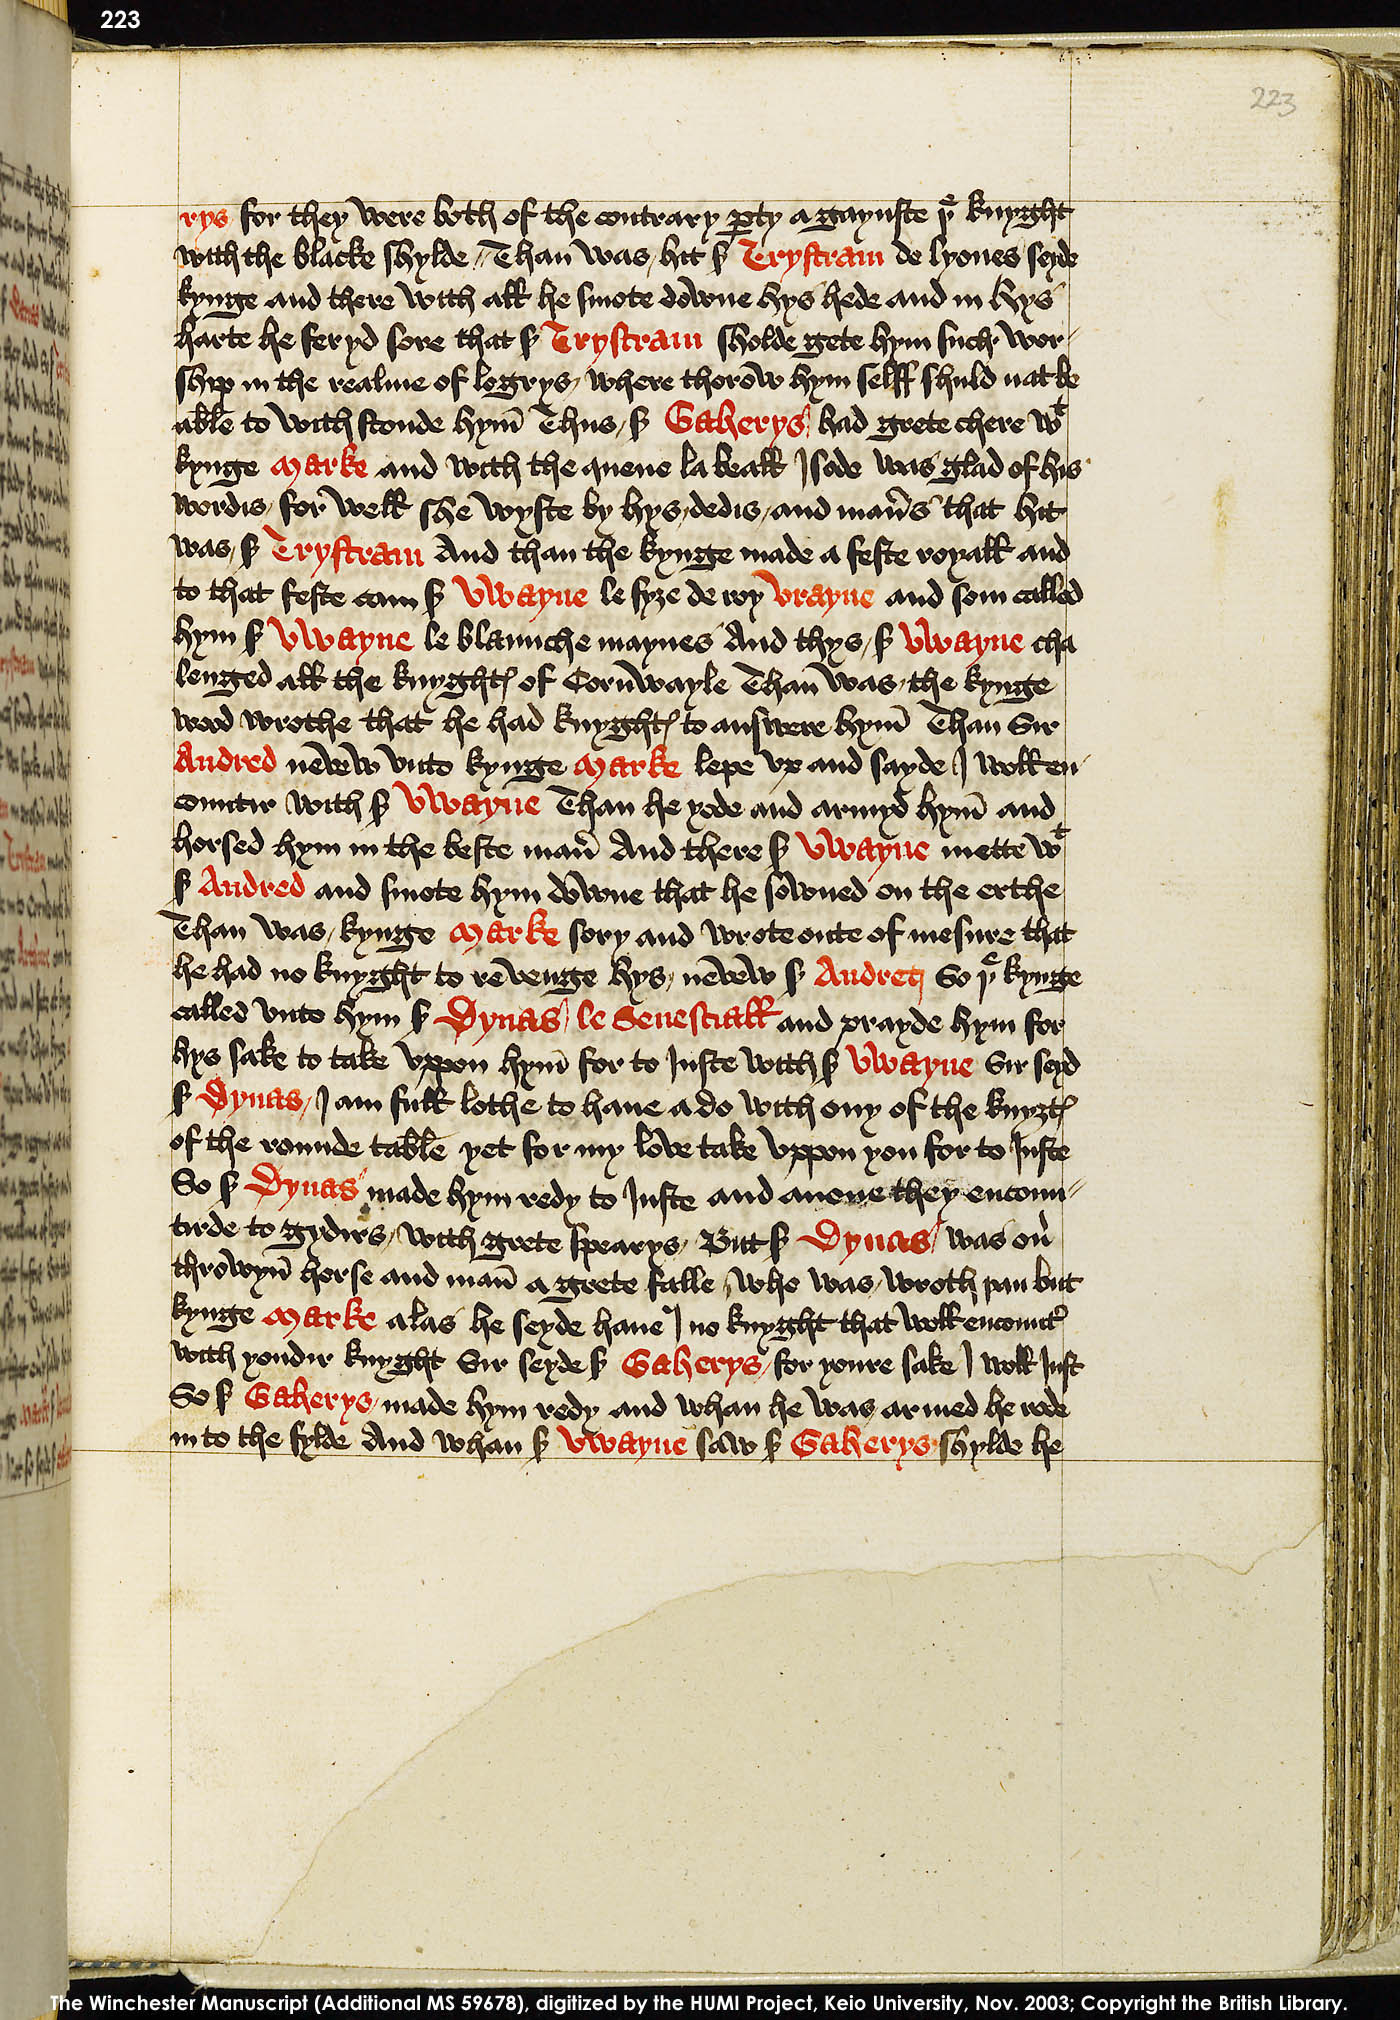 Folio 223r